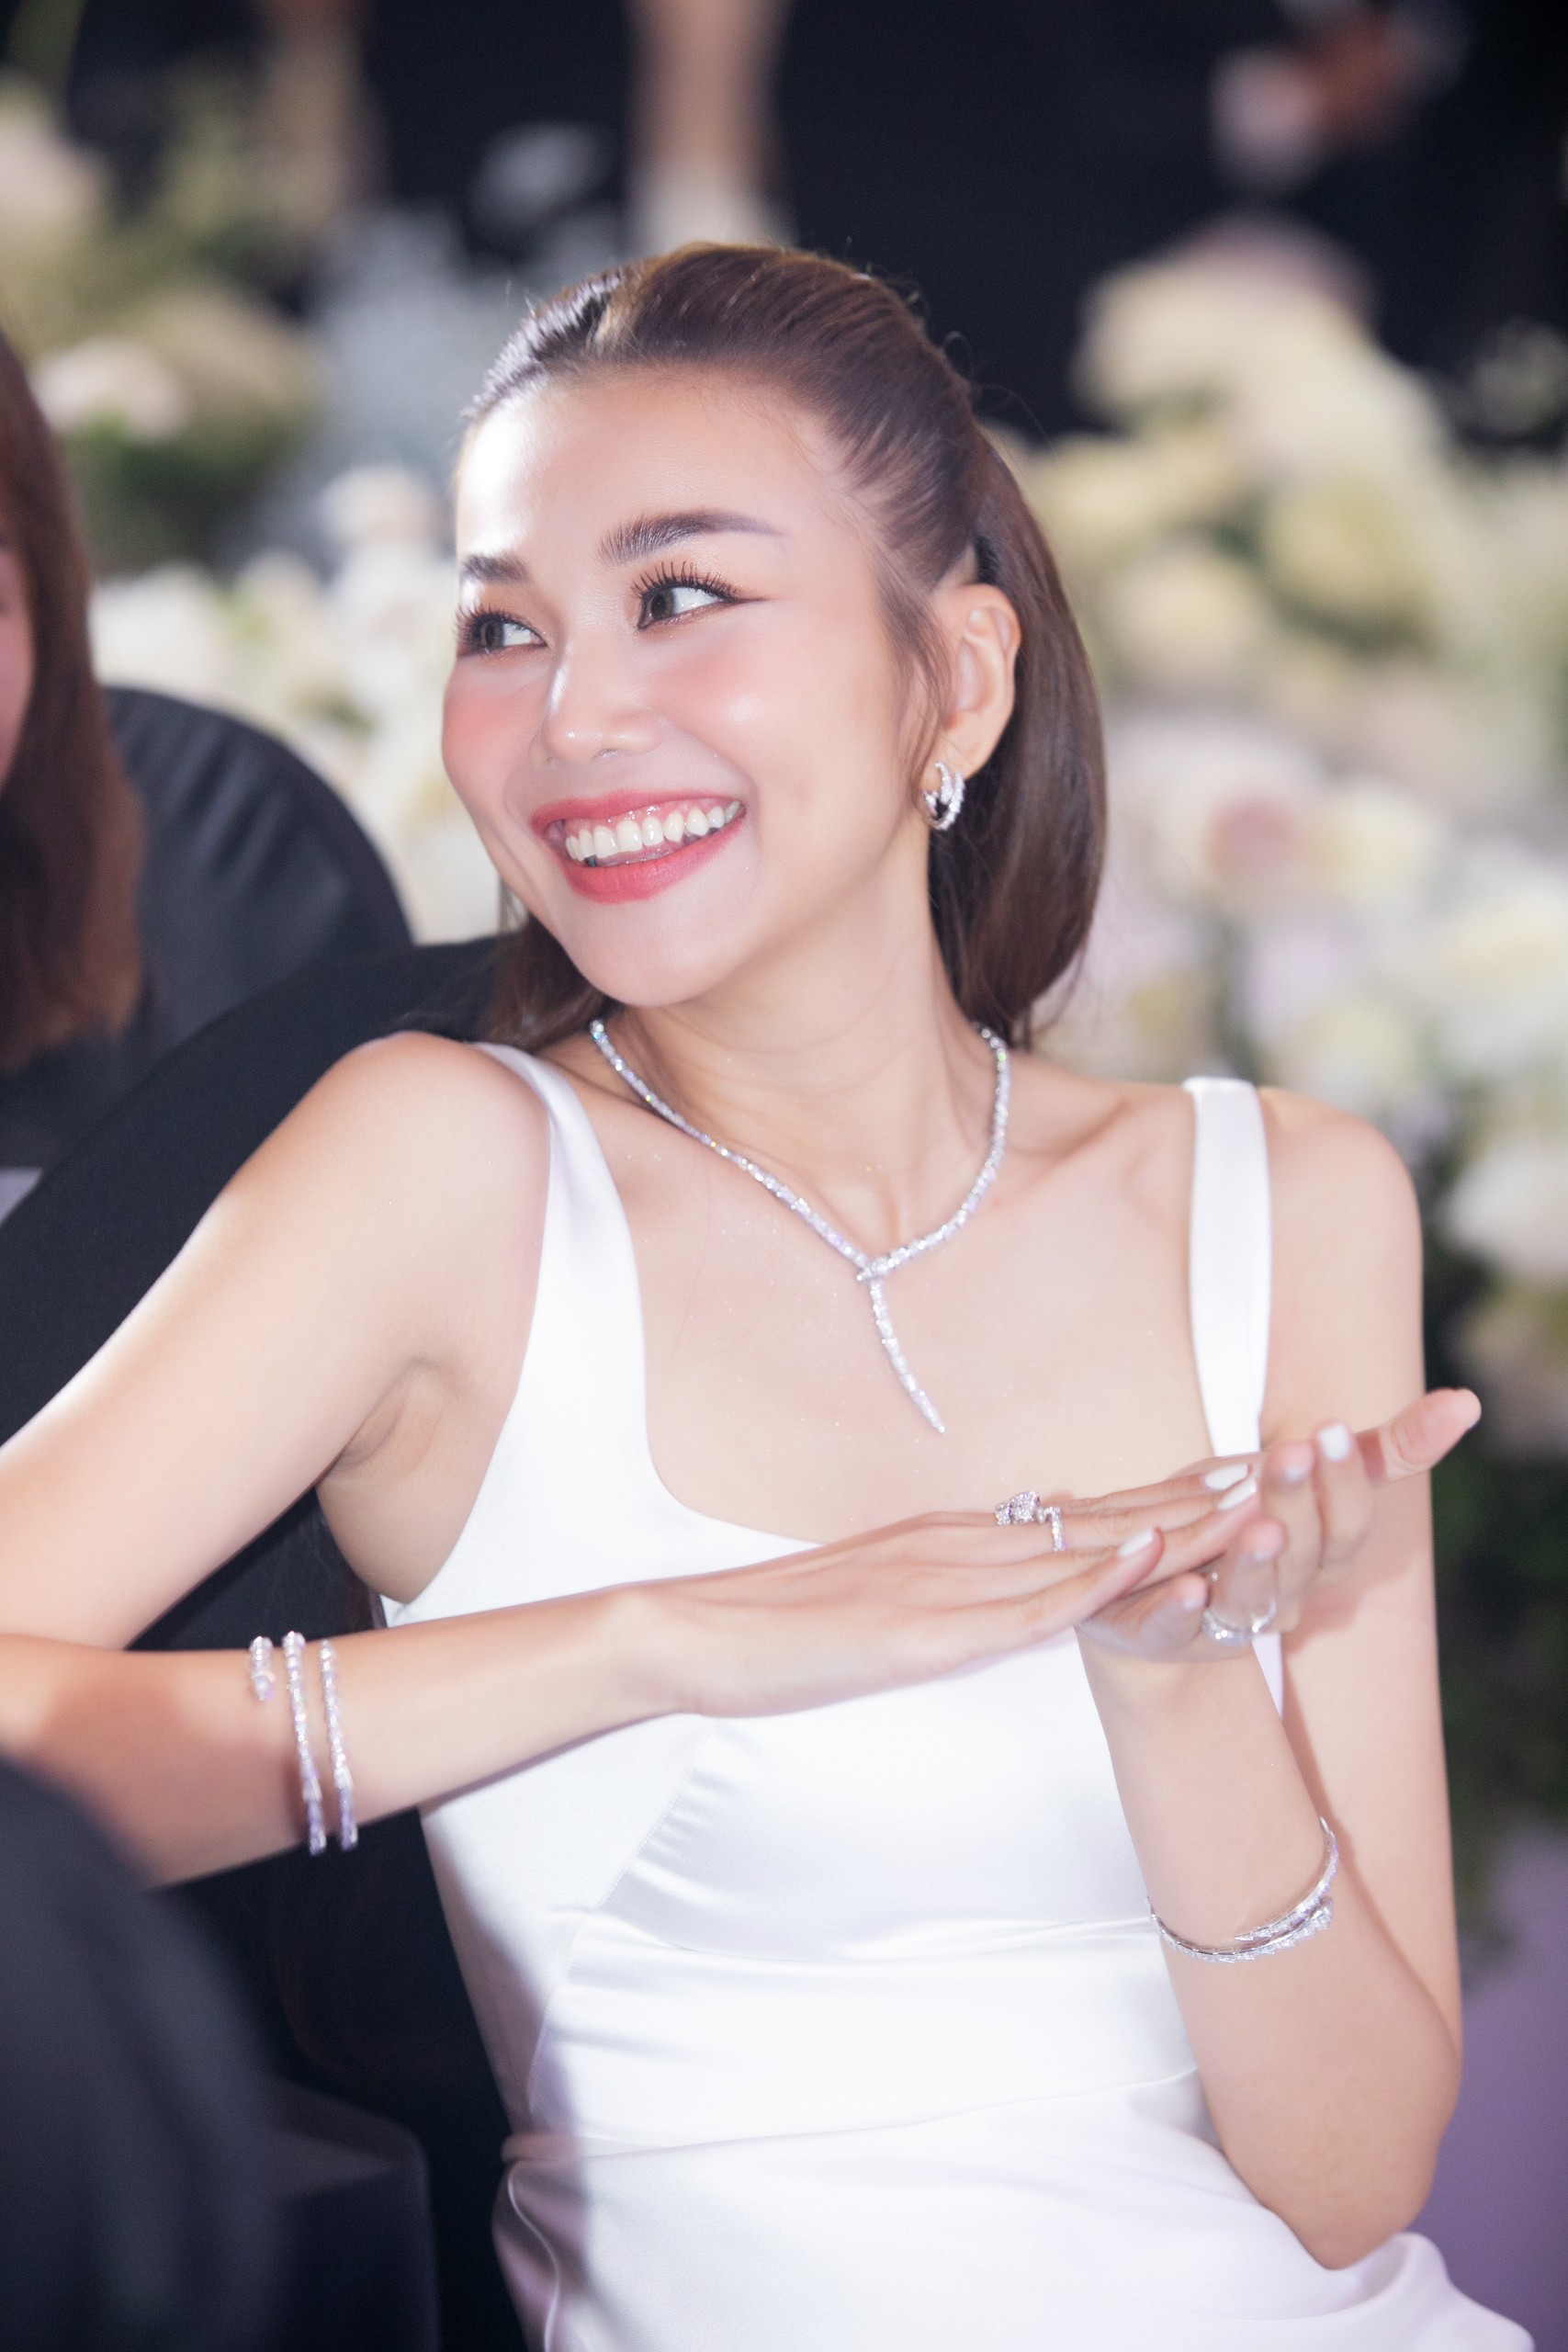 Siêu mẫu Thanh Hằng đeo trang sức hơn 10 tỉ đồng trong đám cưới - Ảnh 8.